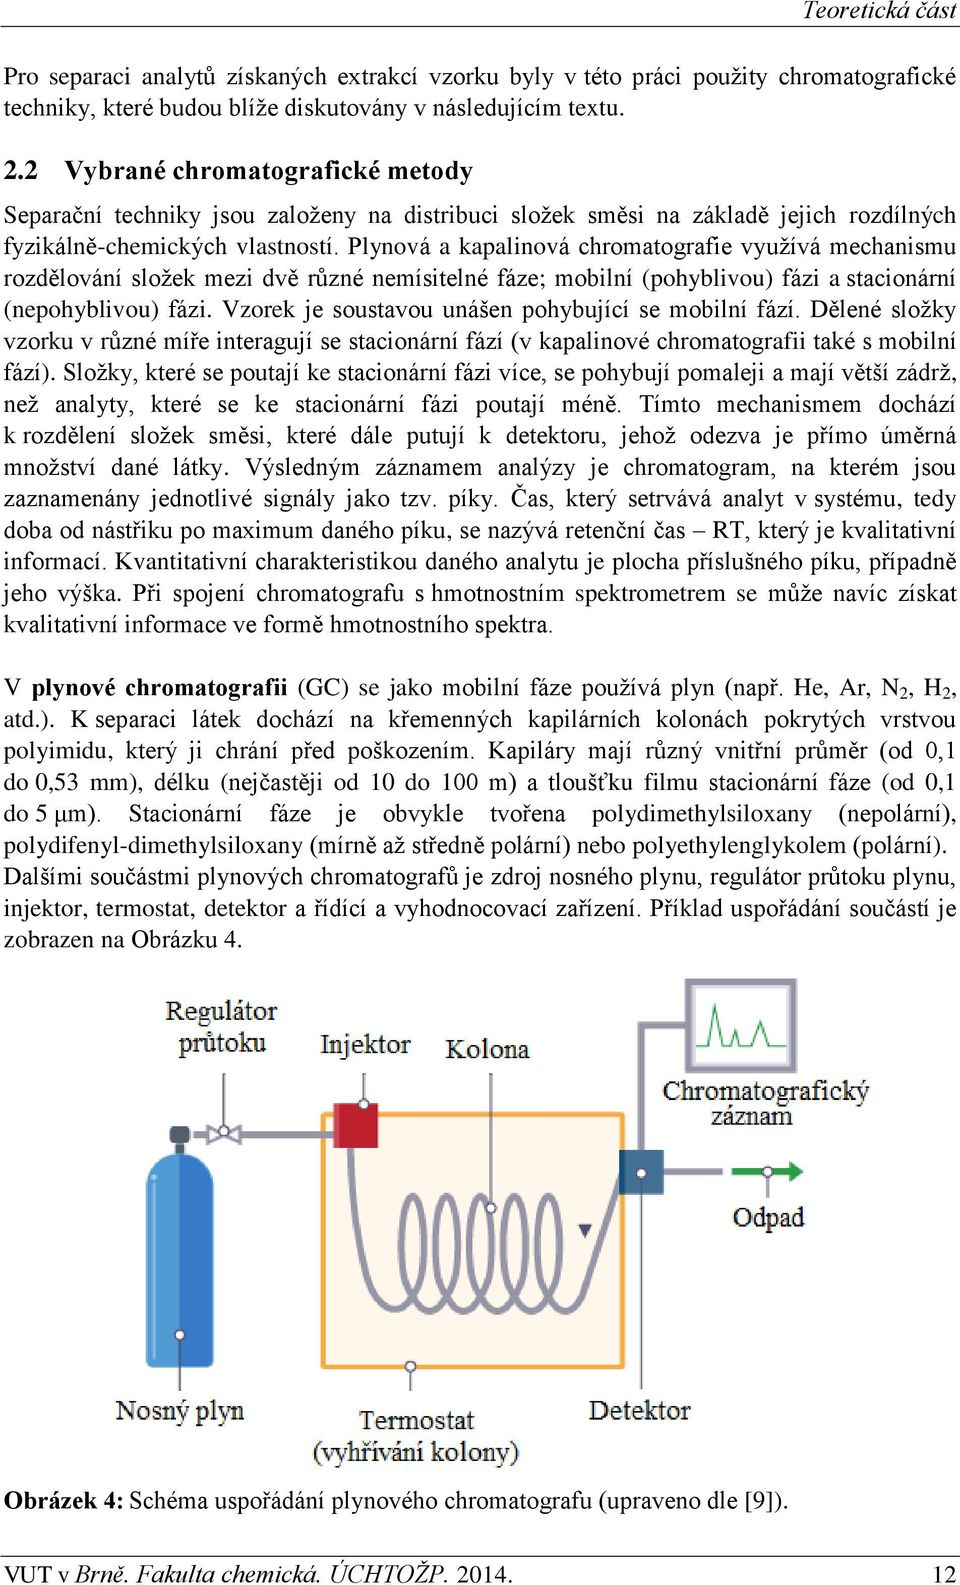 Plynová a kapalinová chromatografie využívá mechanismu rozdělování složek mezi dvě různé nemísitelné fáze; mobilní (pohyblivou) fázi a stacionární (nepohyblivou) fázi.